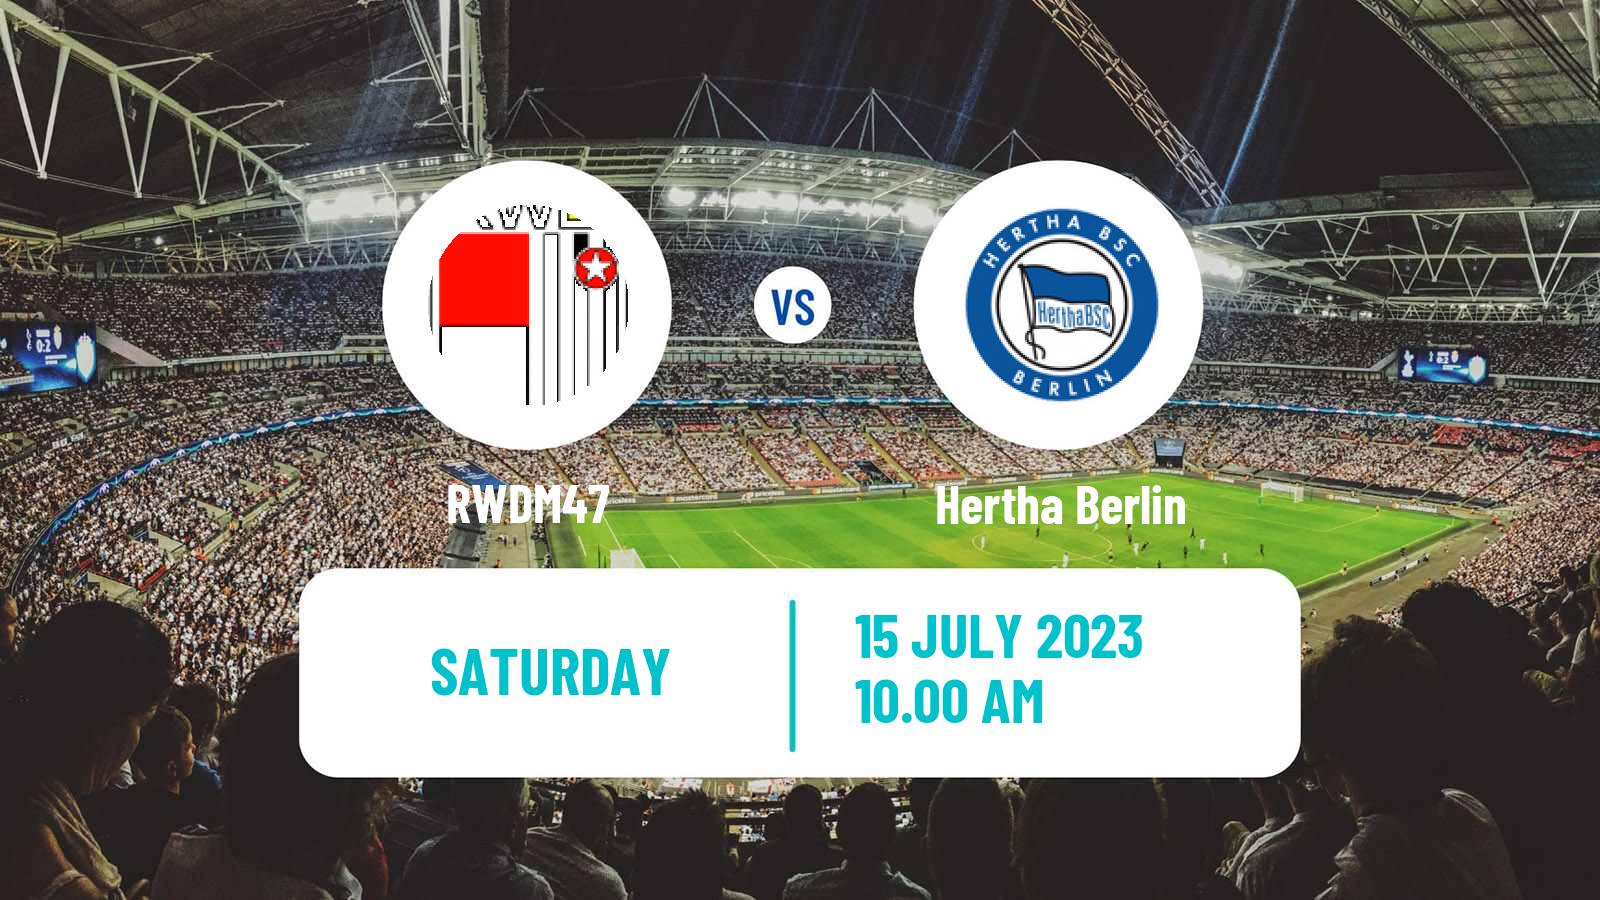 Soccer Club Friendly RWDM47 - Hertha Berlin